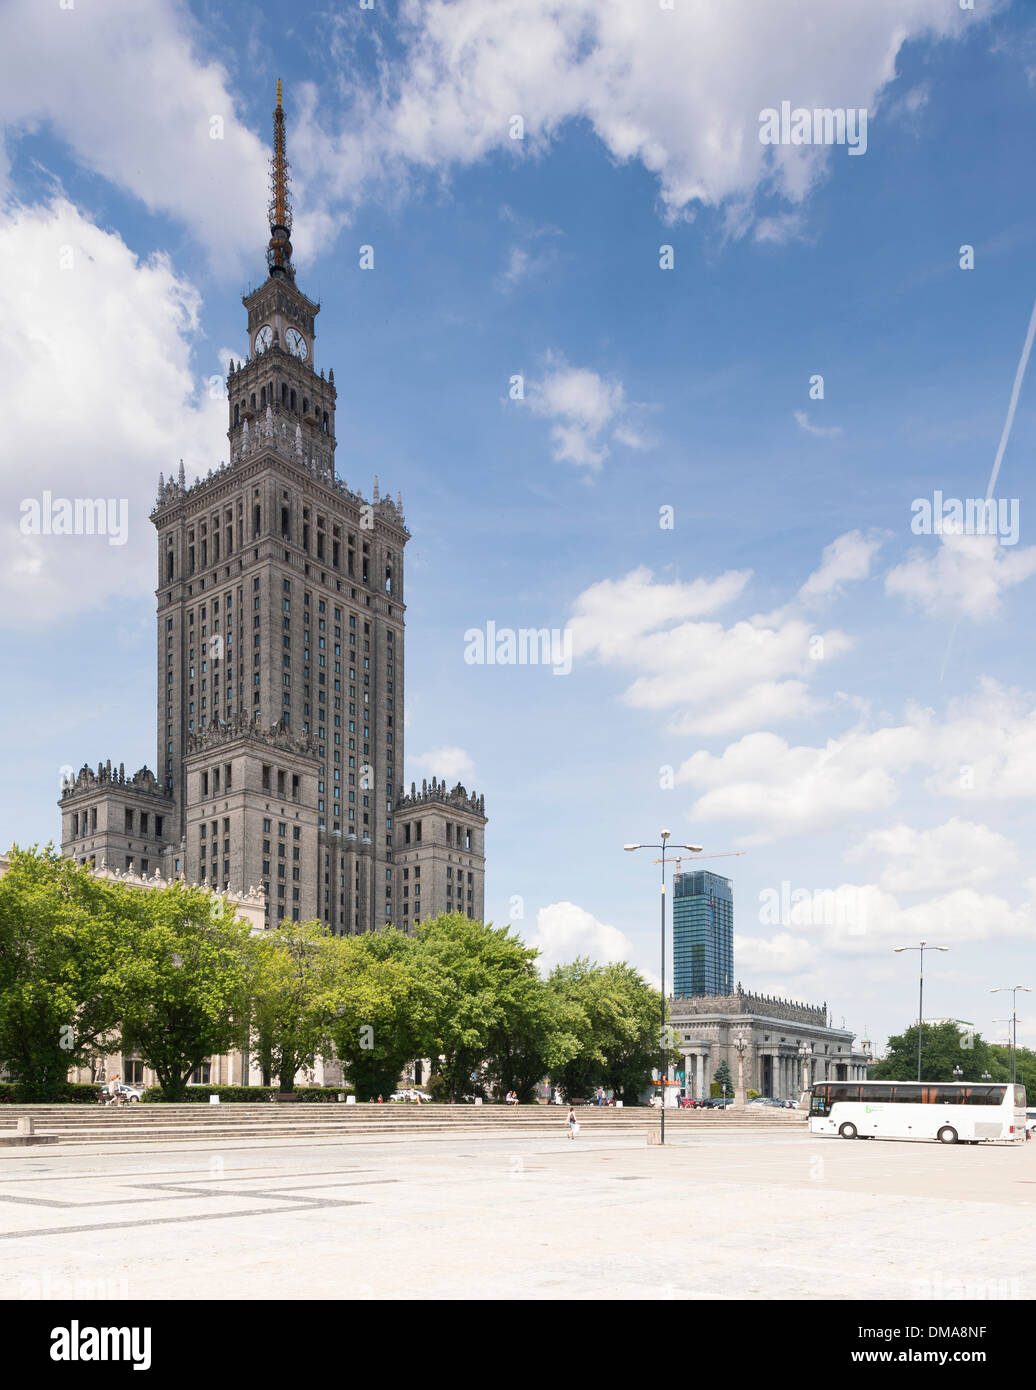 La ville de Varsovie, Varsovie, Pologne. Architecte : Divers, 2013. Matin vue du Palais de la Culture stalinienne comme vu à partir de la Parade Banque D'Images